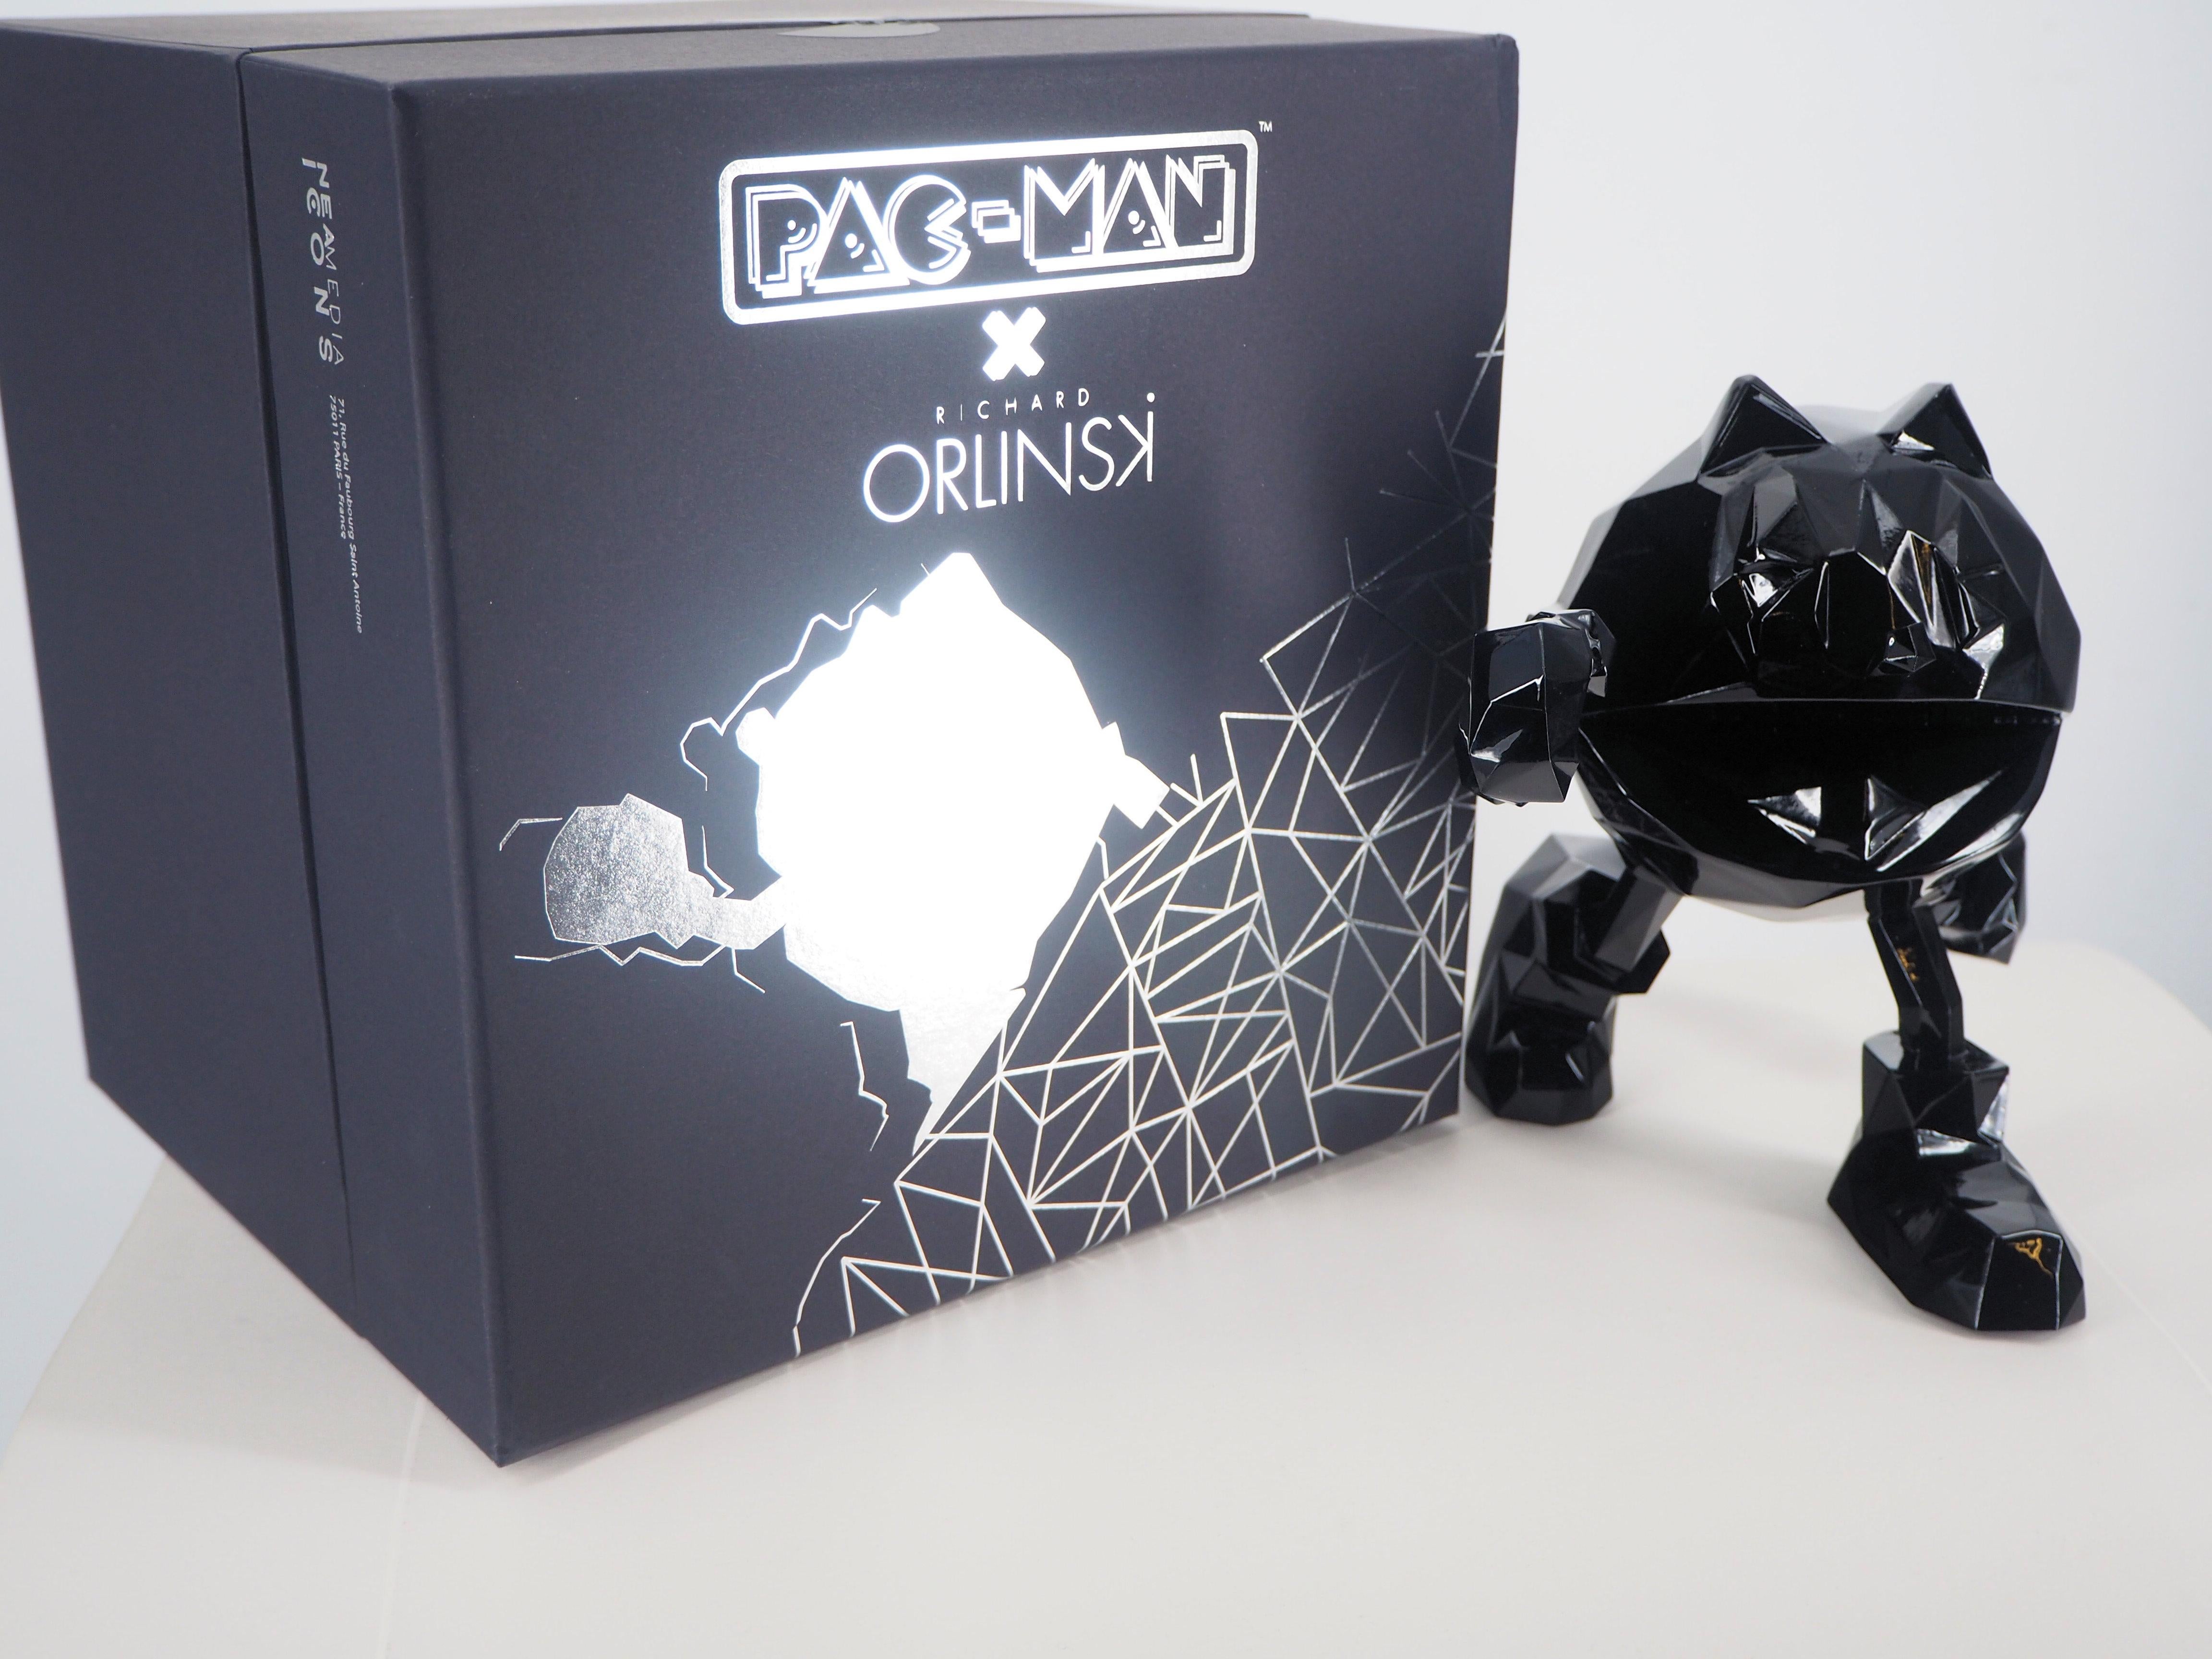 Pac-Man (édition noire) - Sculpture  - Gris Figurative Sculpture par Richard Orlinski